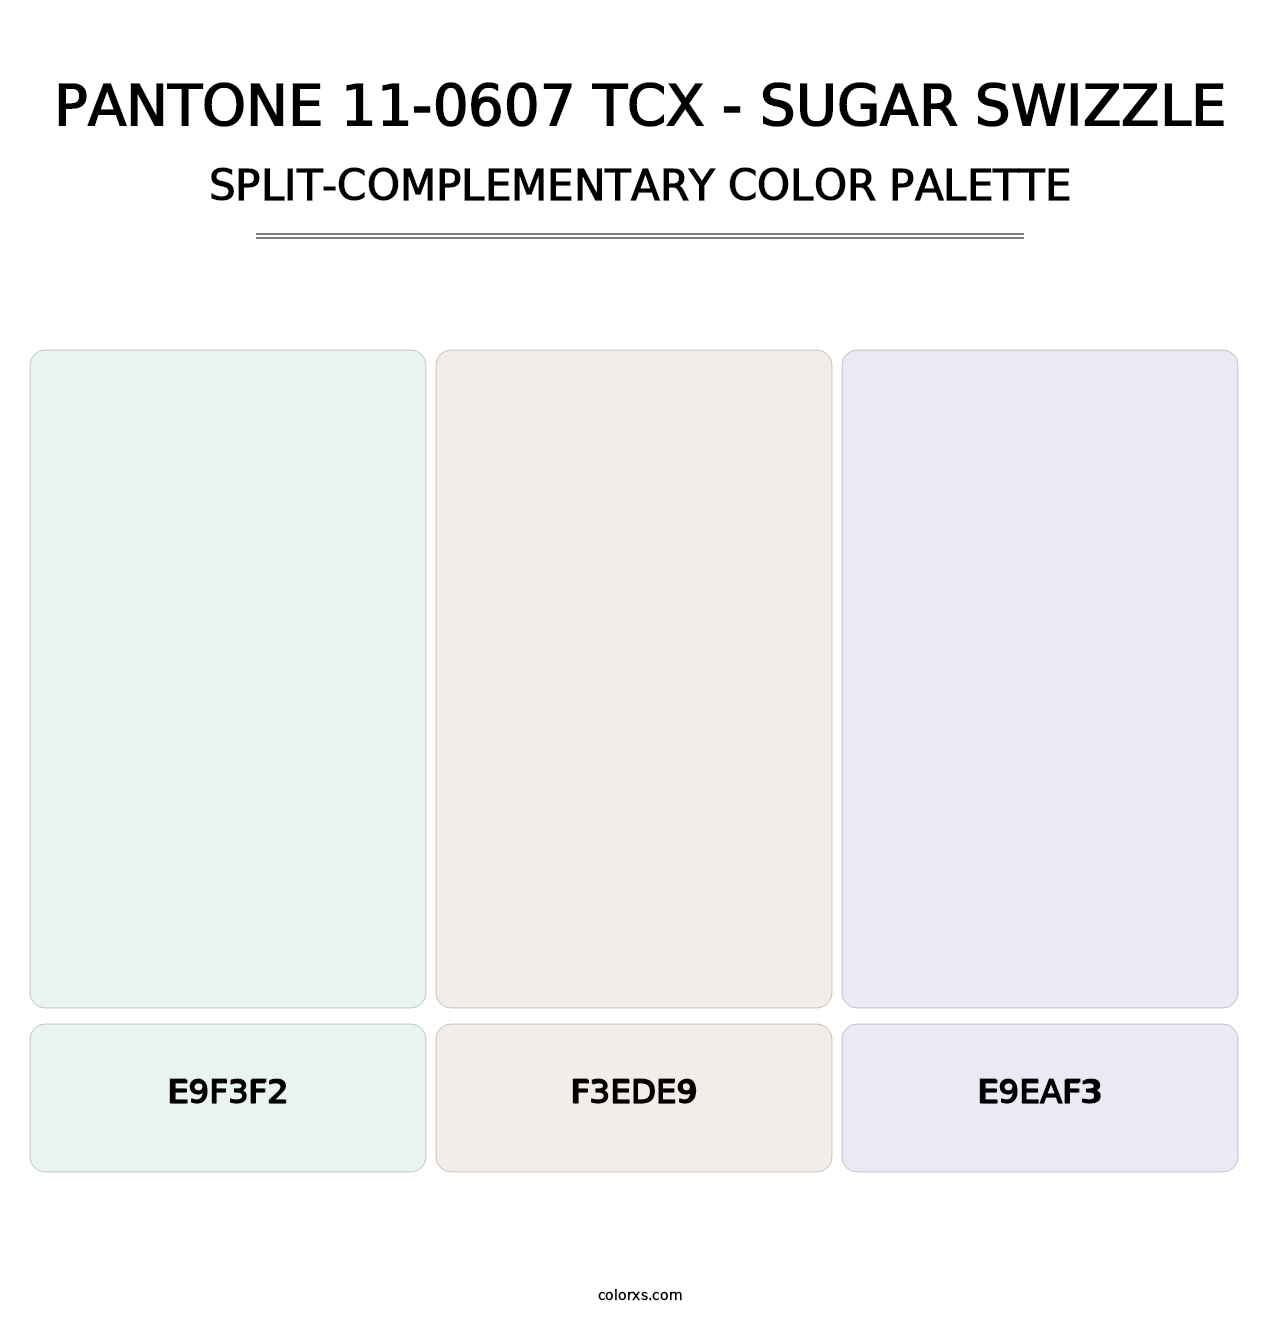 PANTONE 11-0607 TCX - Sugar Swizzle - Split-Complementary Color Palette